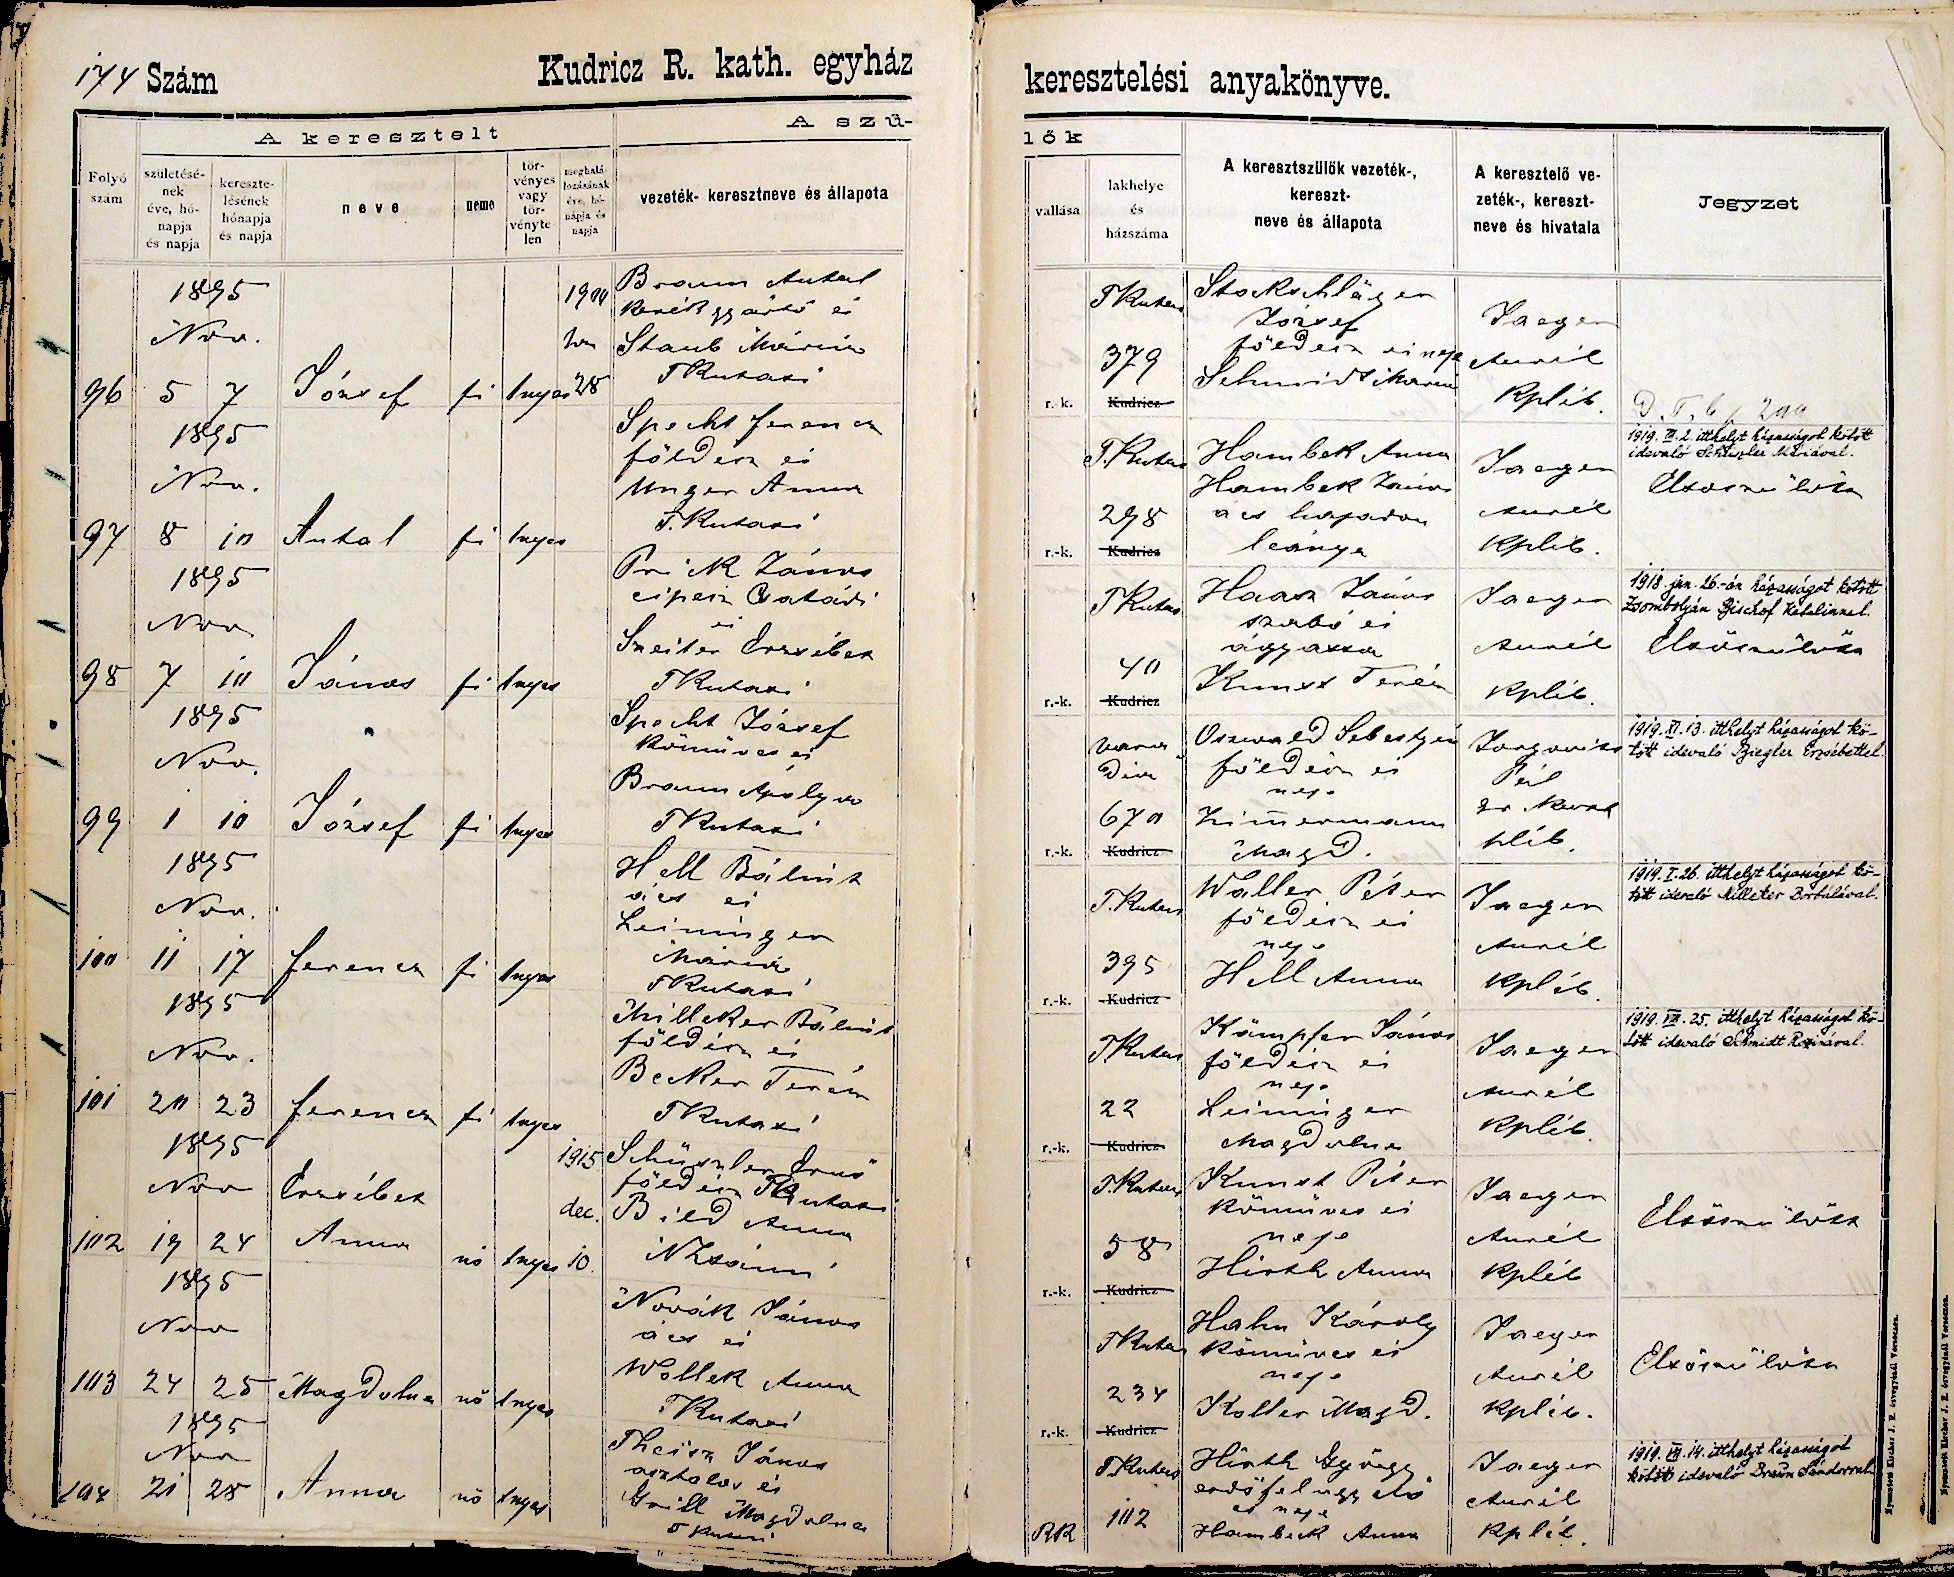 images/church_records/BIRTHS/1884-1899B/1895/174Q